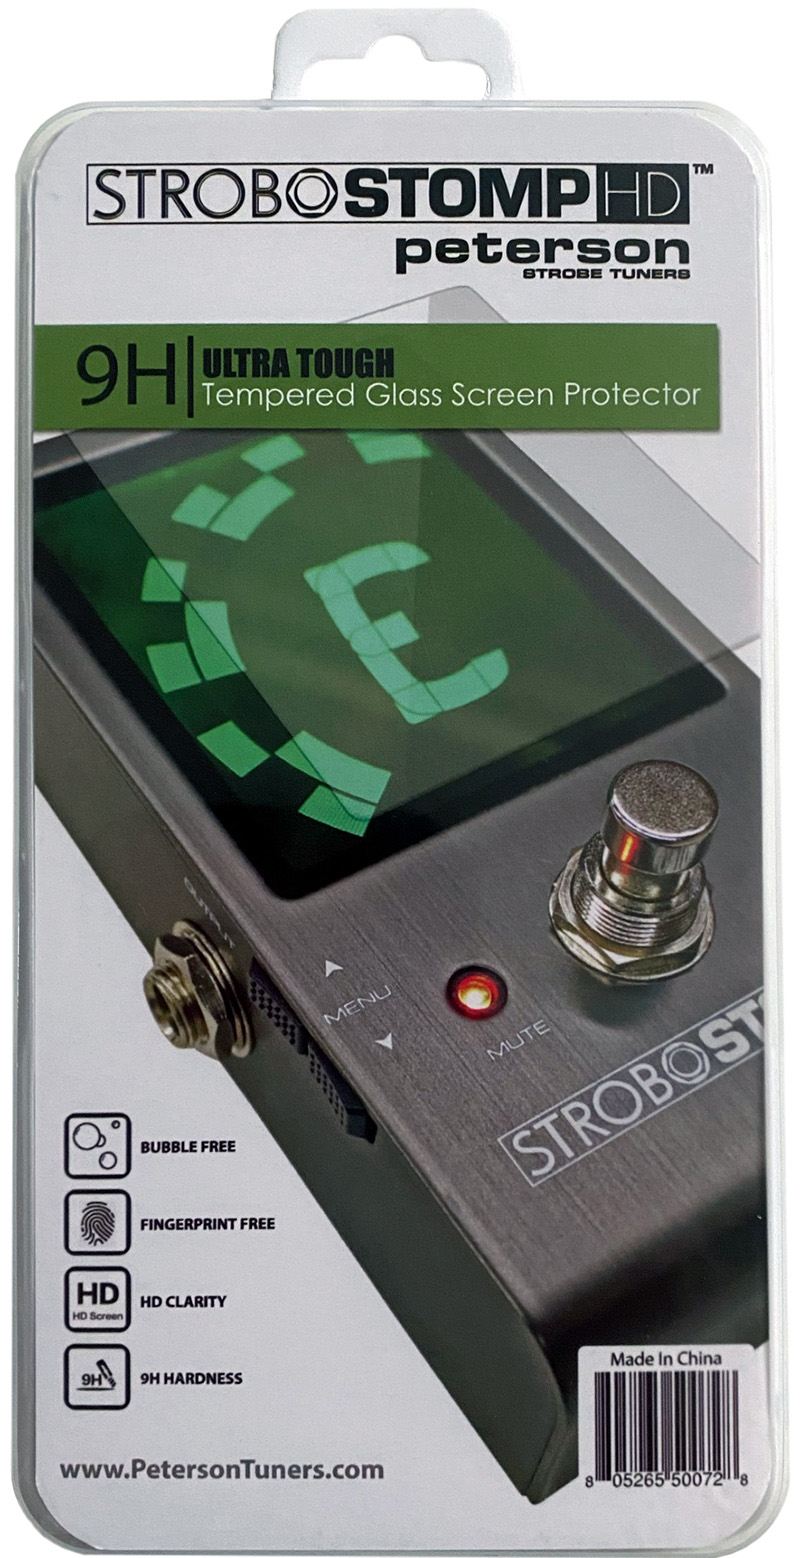 日本エレクトロ・ハーモニックスからStroboStomp HD/LE 用ディスプレイ保護用強化ガラス・フィルム、peterson「Strobo Stomp HD/LE Tempered Glass Screen Protector」がリリースされた。